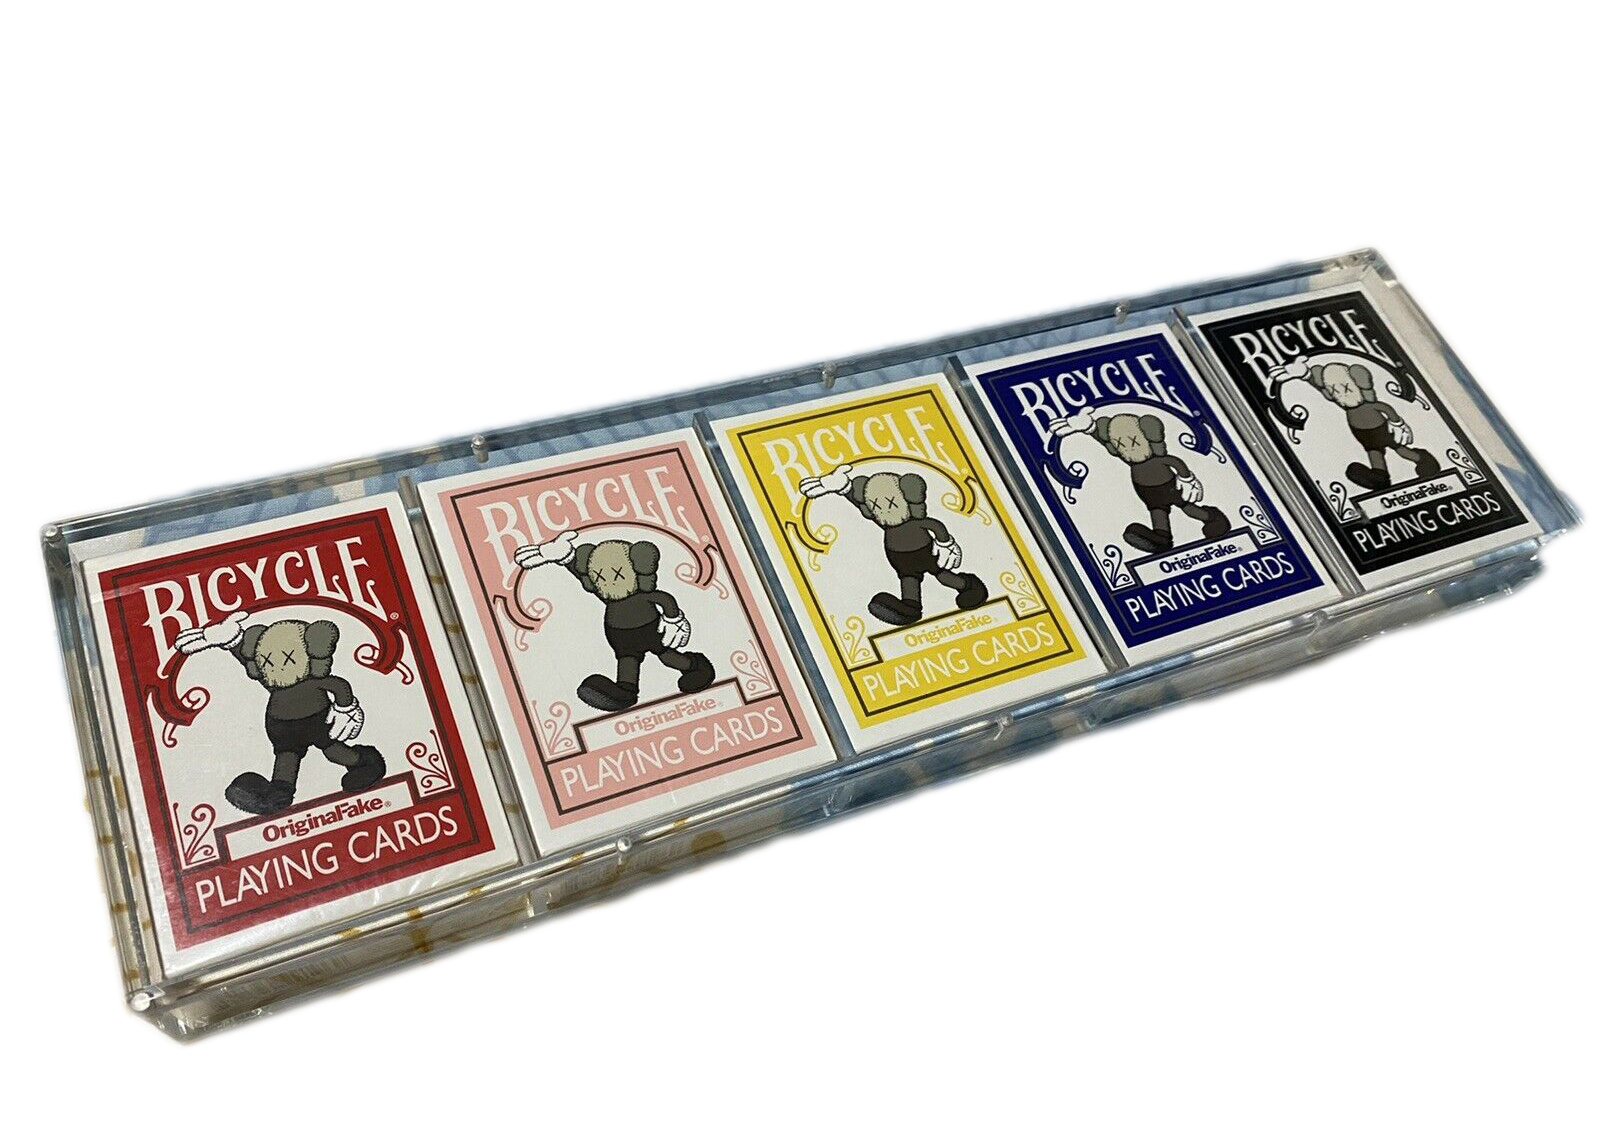 KAWS Original Fake Bicycle Playing Cards - US